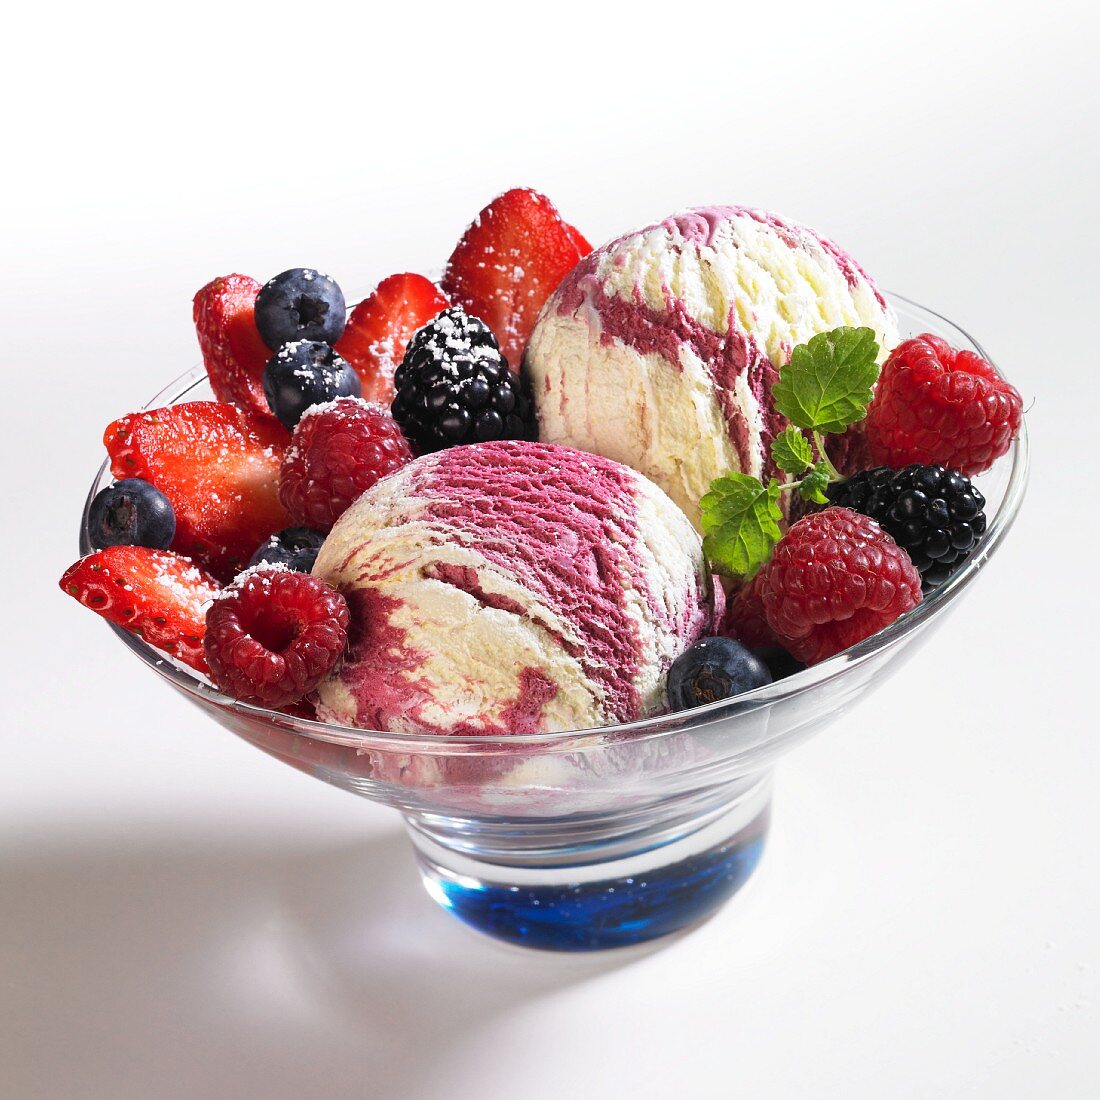 Vanille-Beeren-Eis mit Himbeeren, Blaubeeren, Brombeeren mit Puderzucker, Sahne und Zitronenmelisse